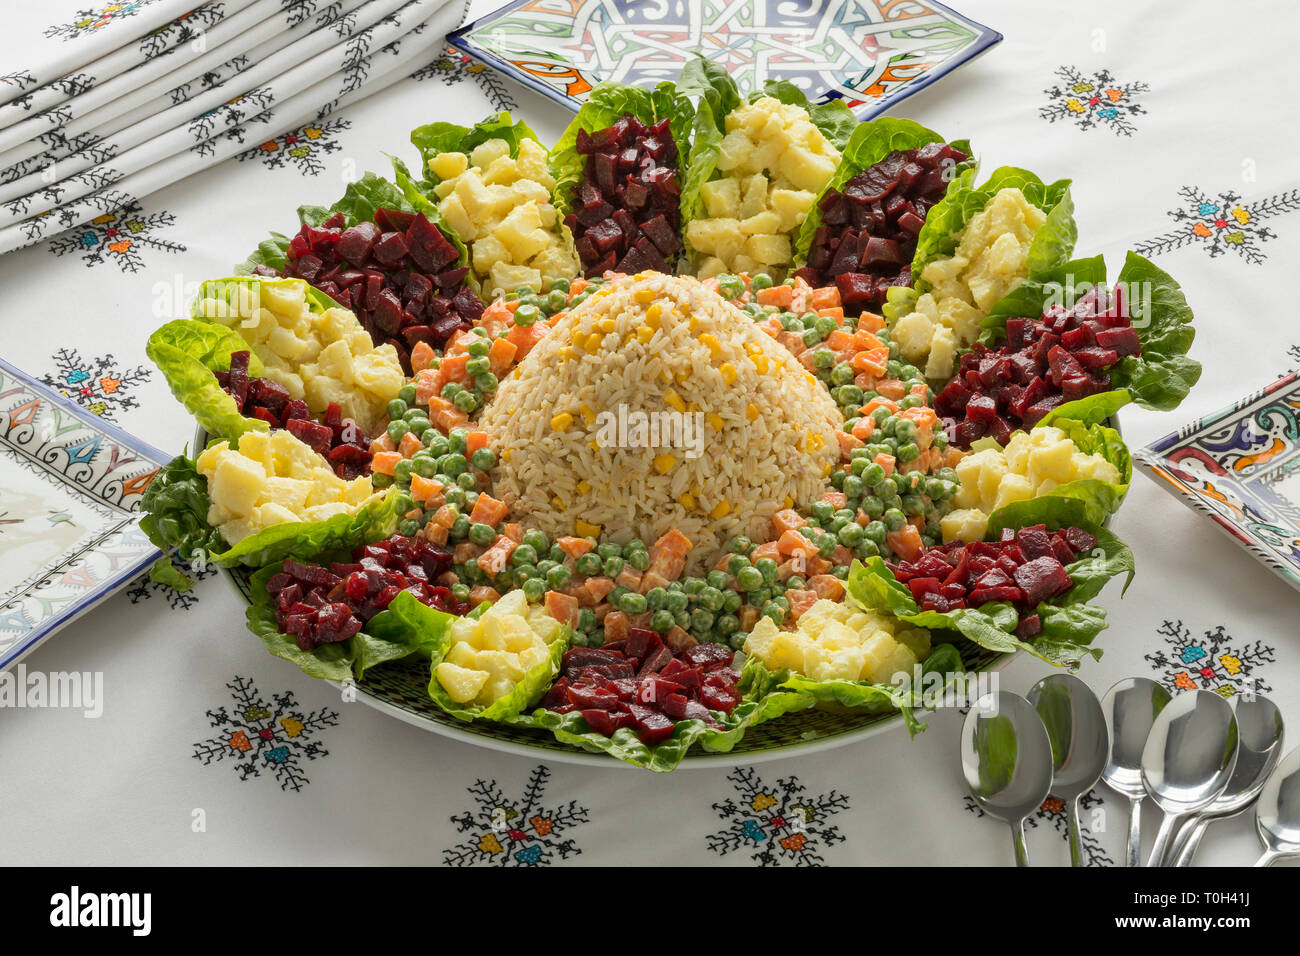 Schale mit traditionellen festlichen Marokkanischen gemischter Salat auf einem schön gedeckten Tisch mit bestickten Tischdecke Stockfoto